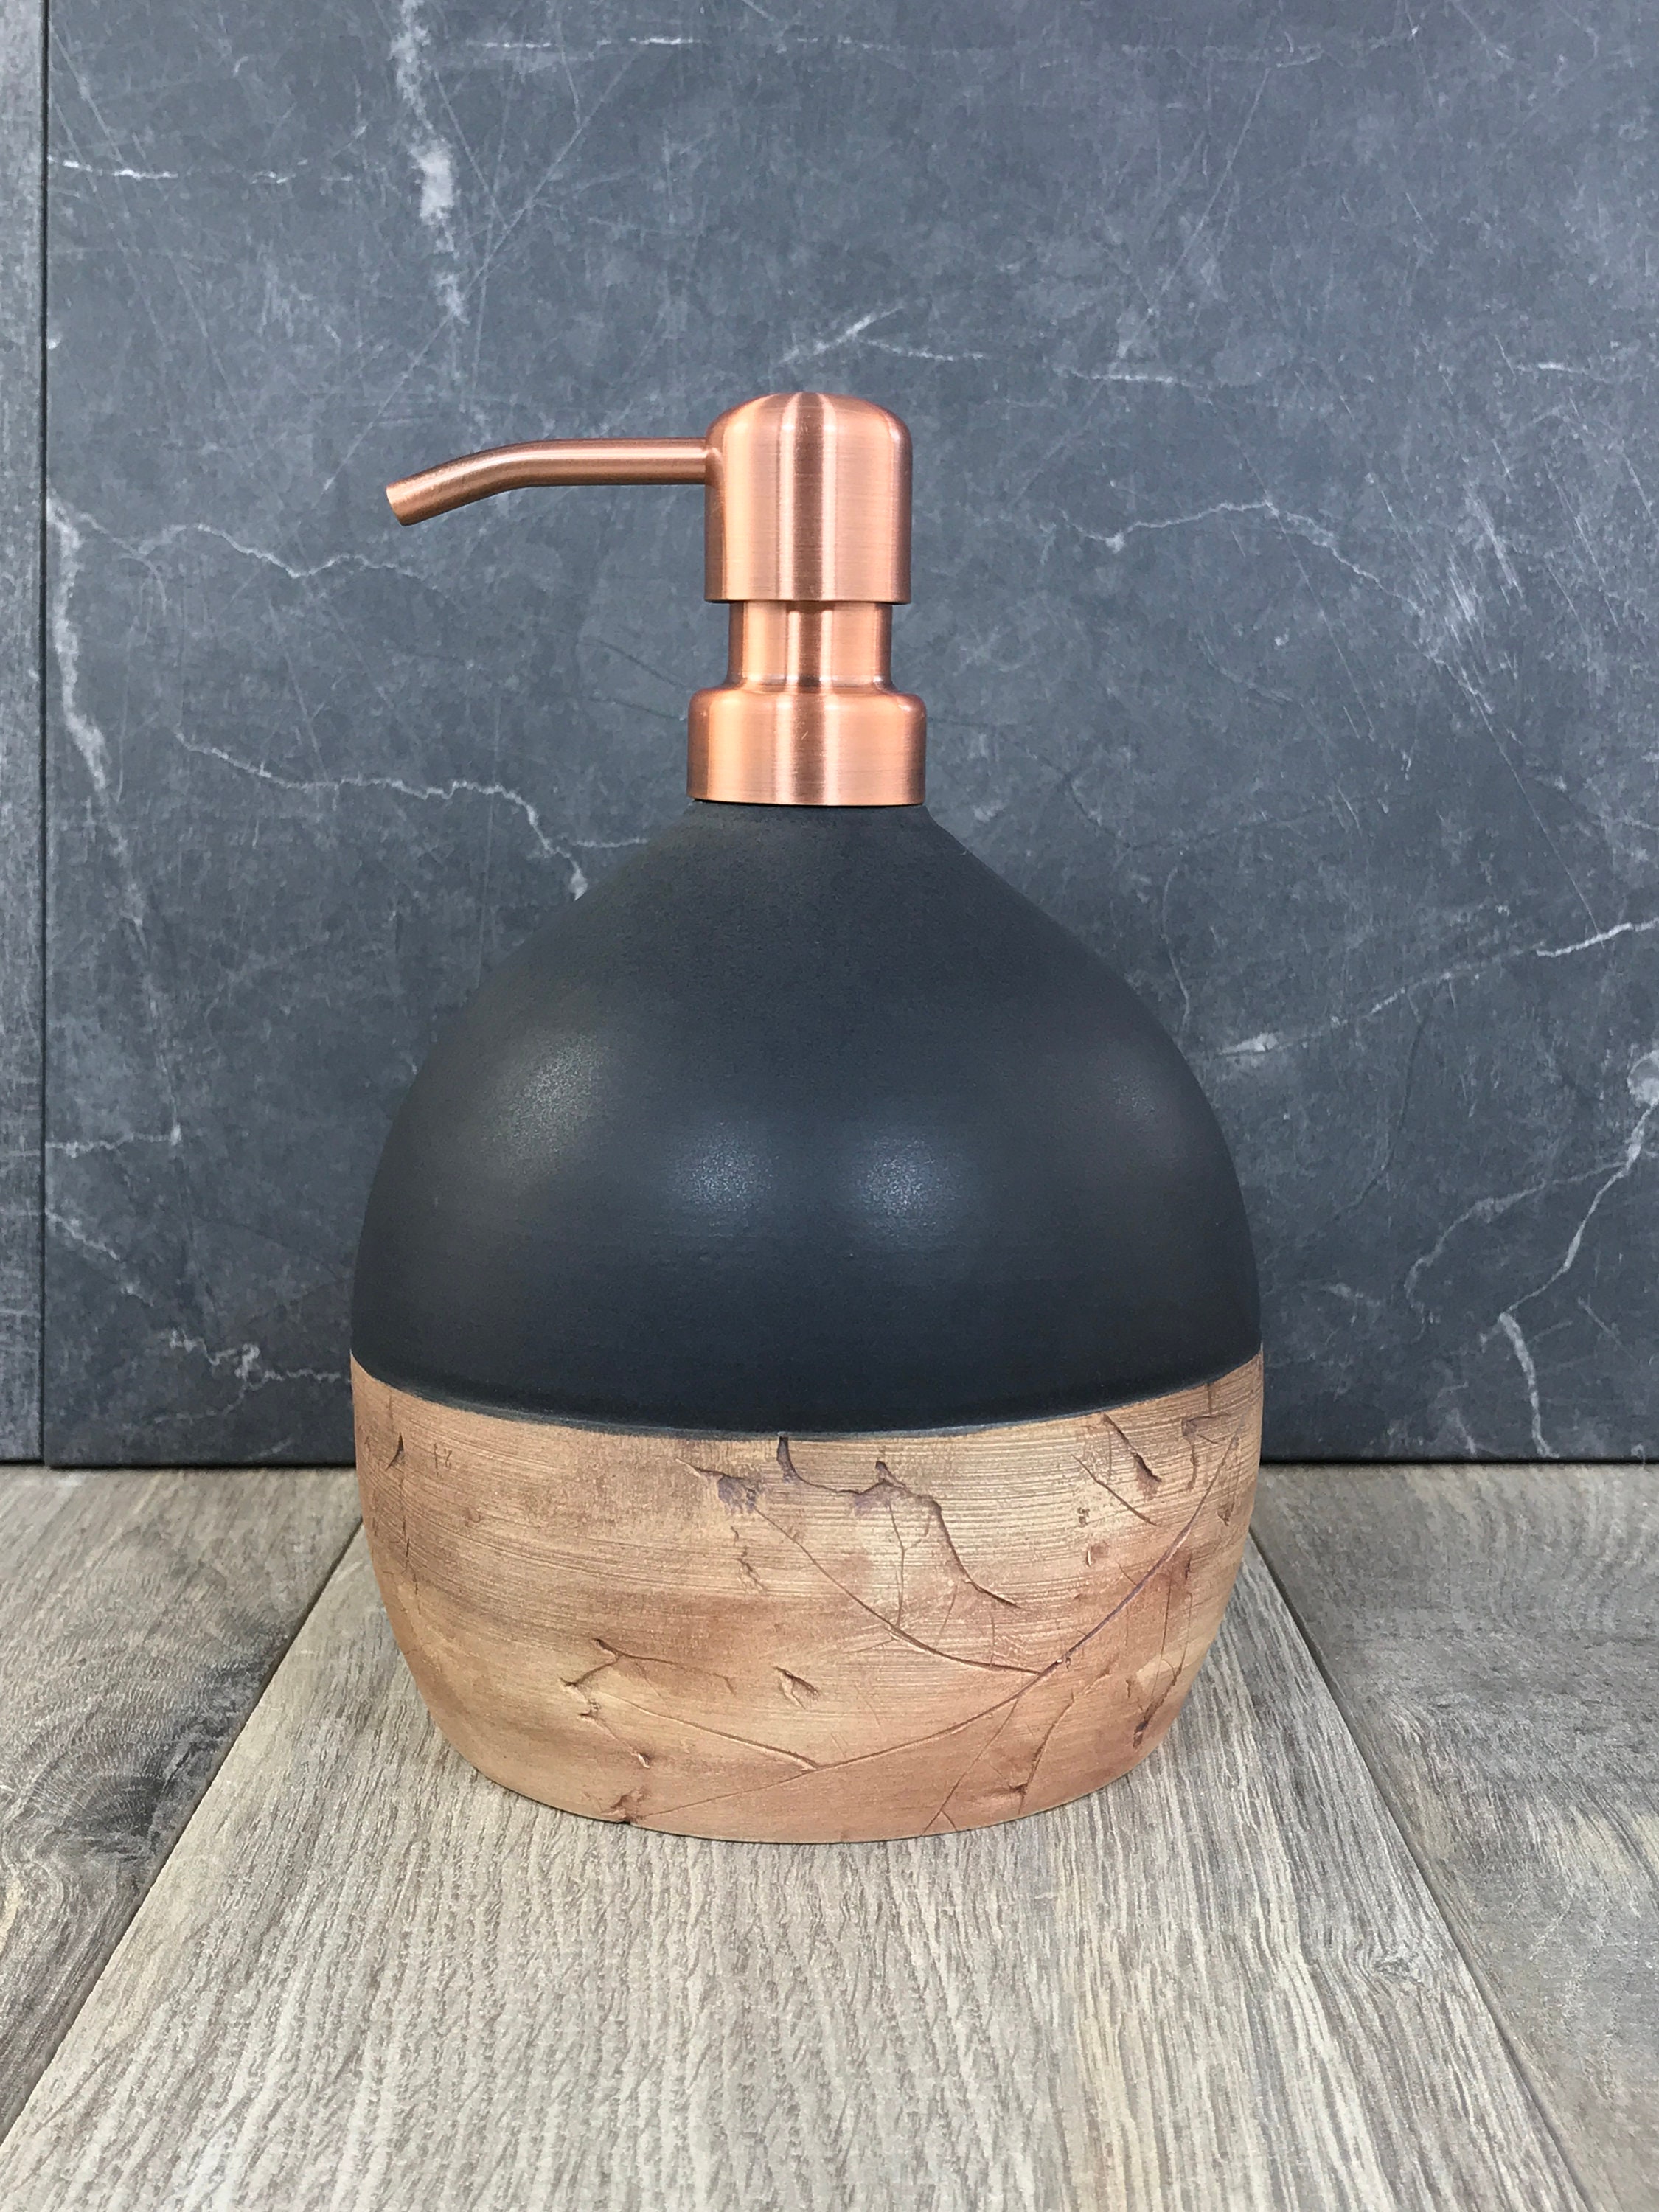 Soap or Lotion Dispenser Bottle Kitchen Set — Back Bay Pottery